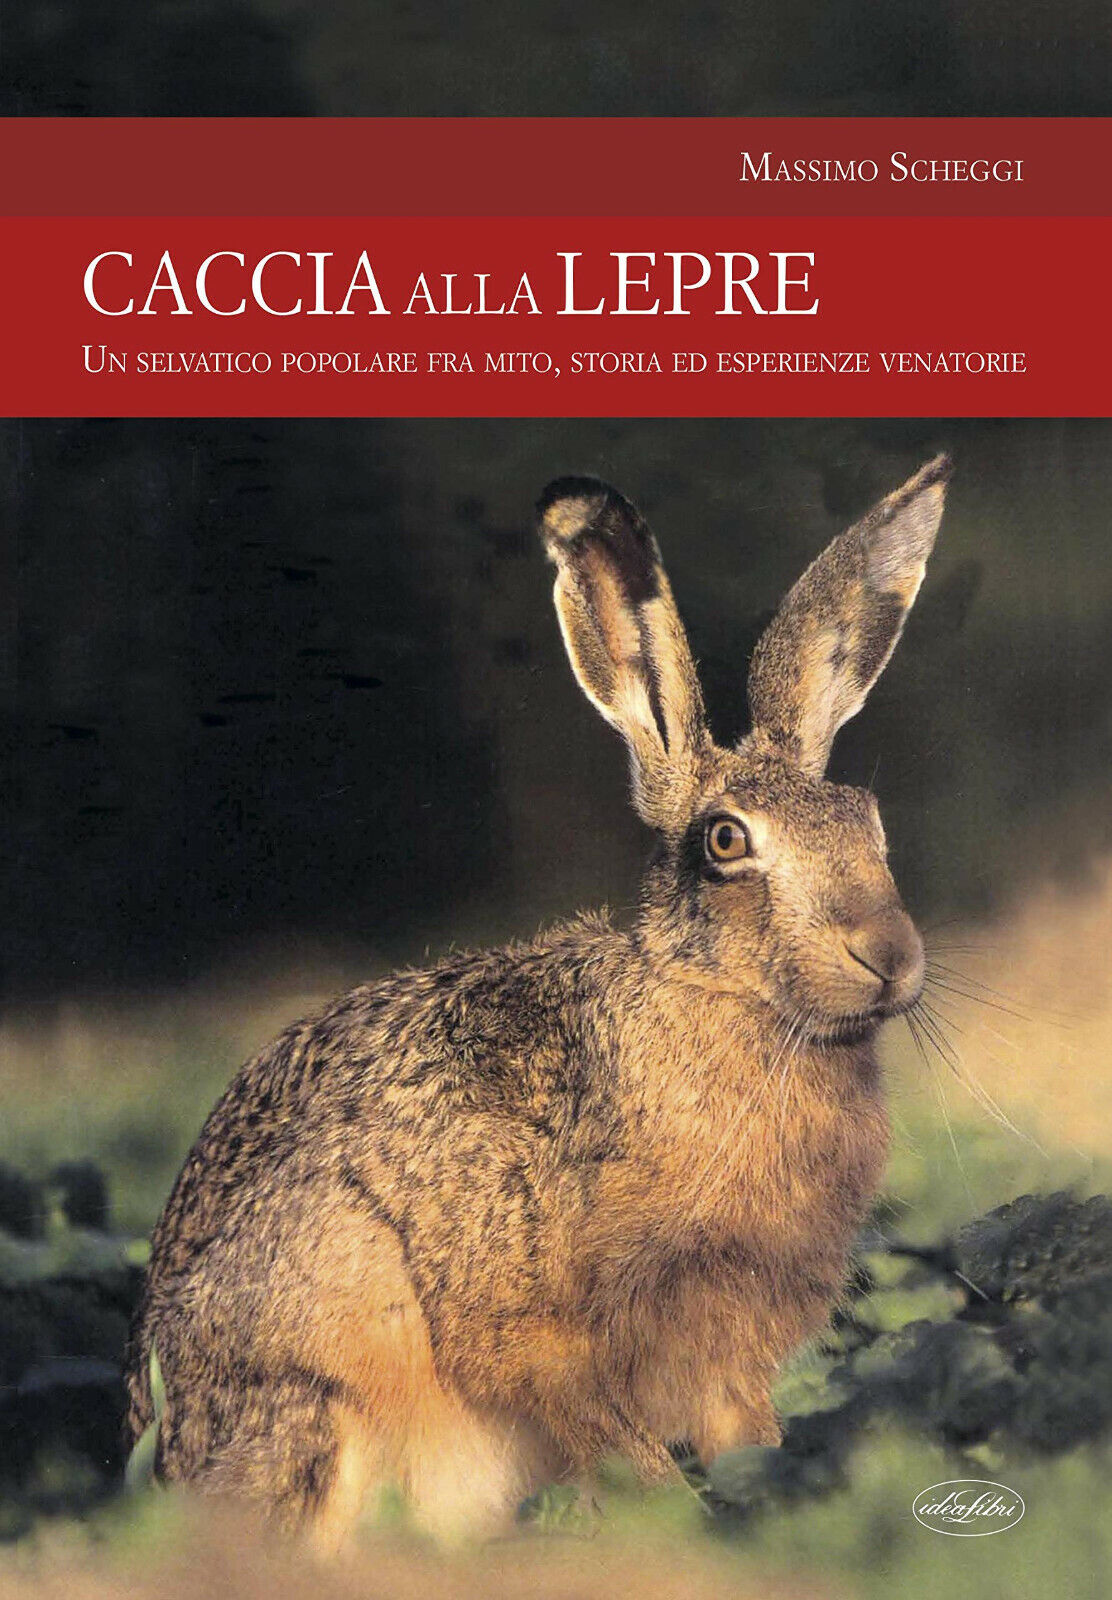 Caccia alla lepre - Massimo Scheggi - Idea Libri, 2019 libro usato